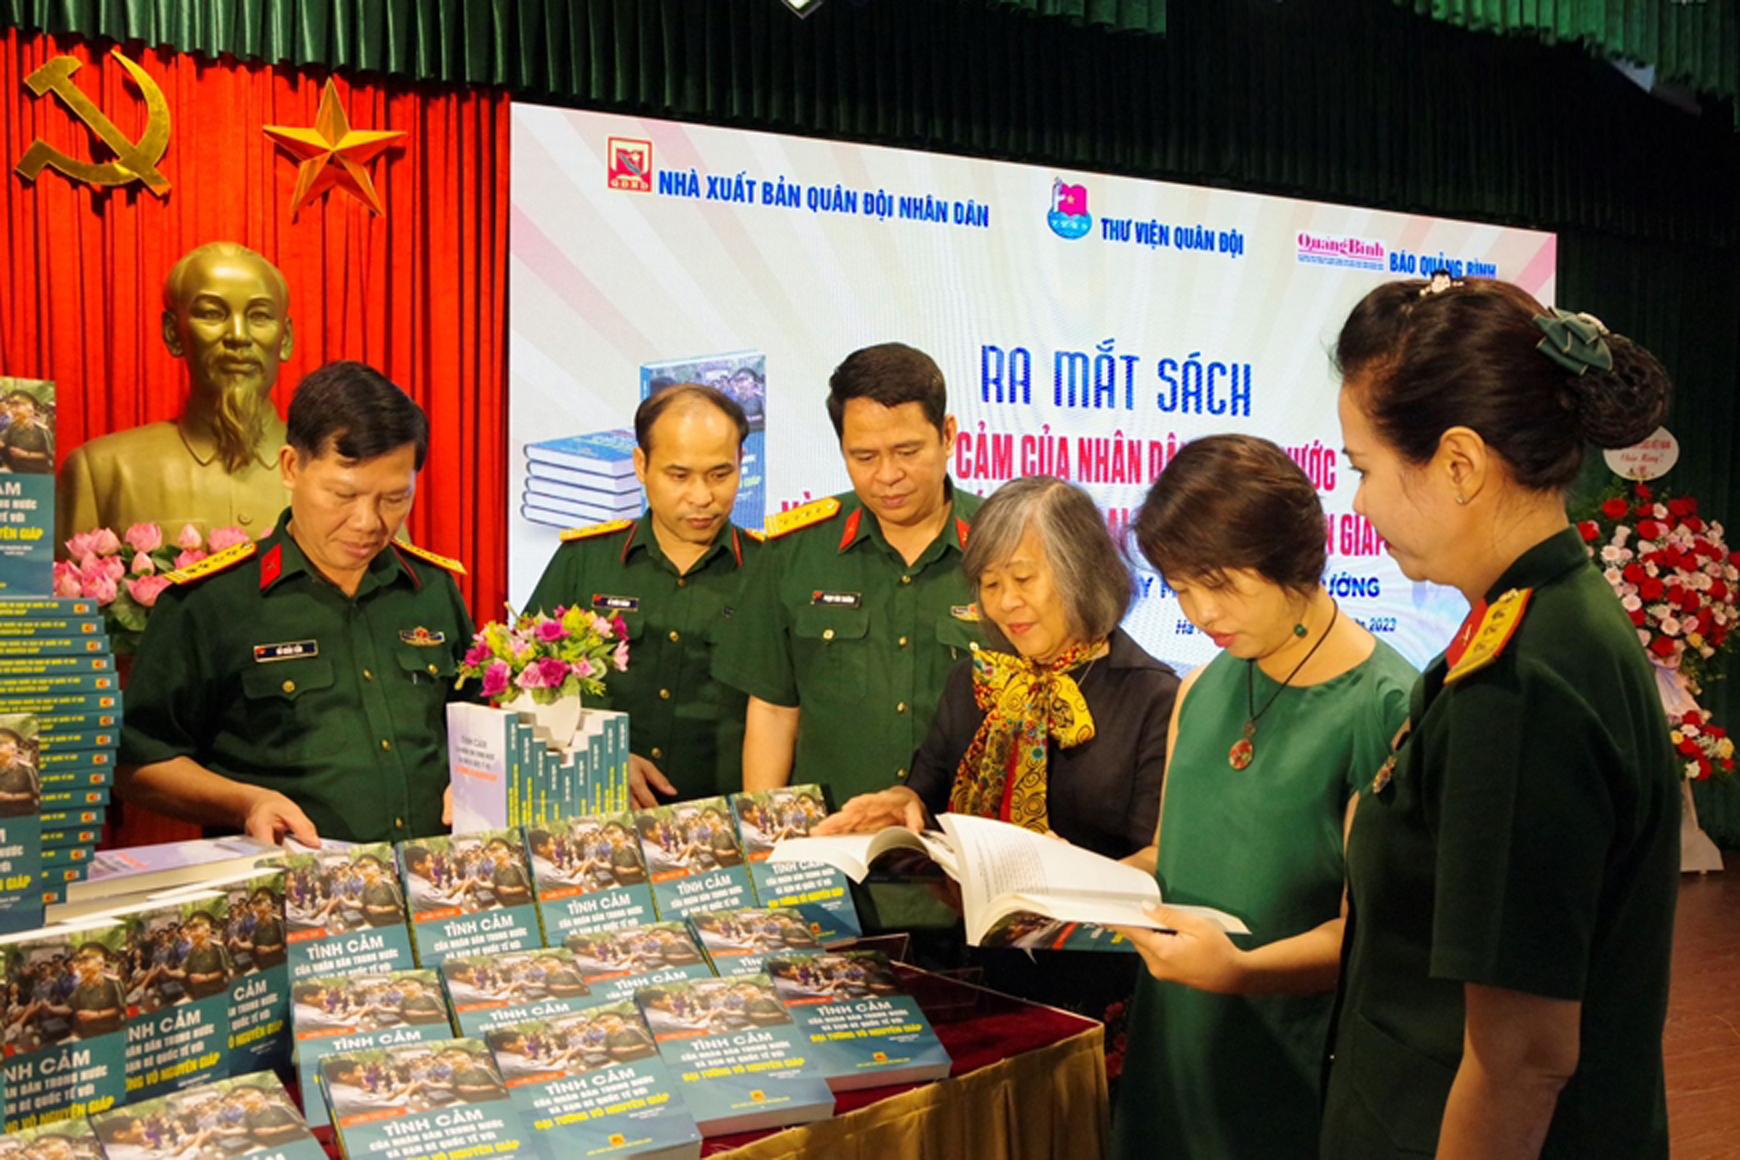 Ra mắt sách về Đại tướng Võ Nguyễn Giáp